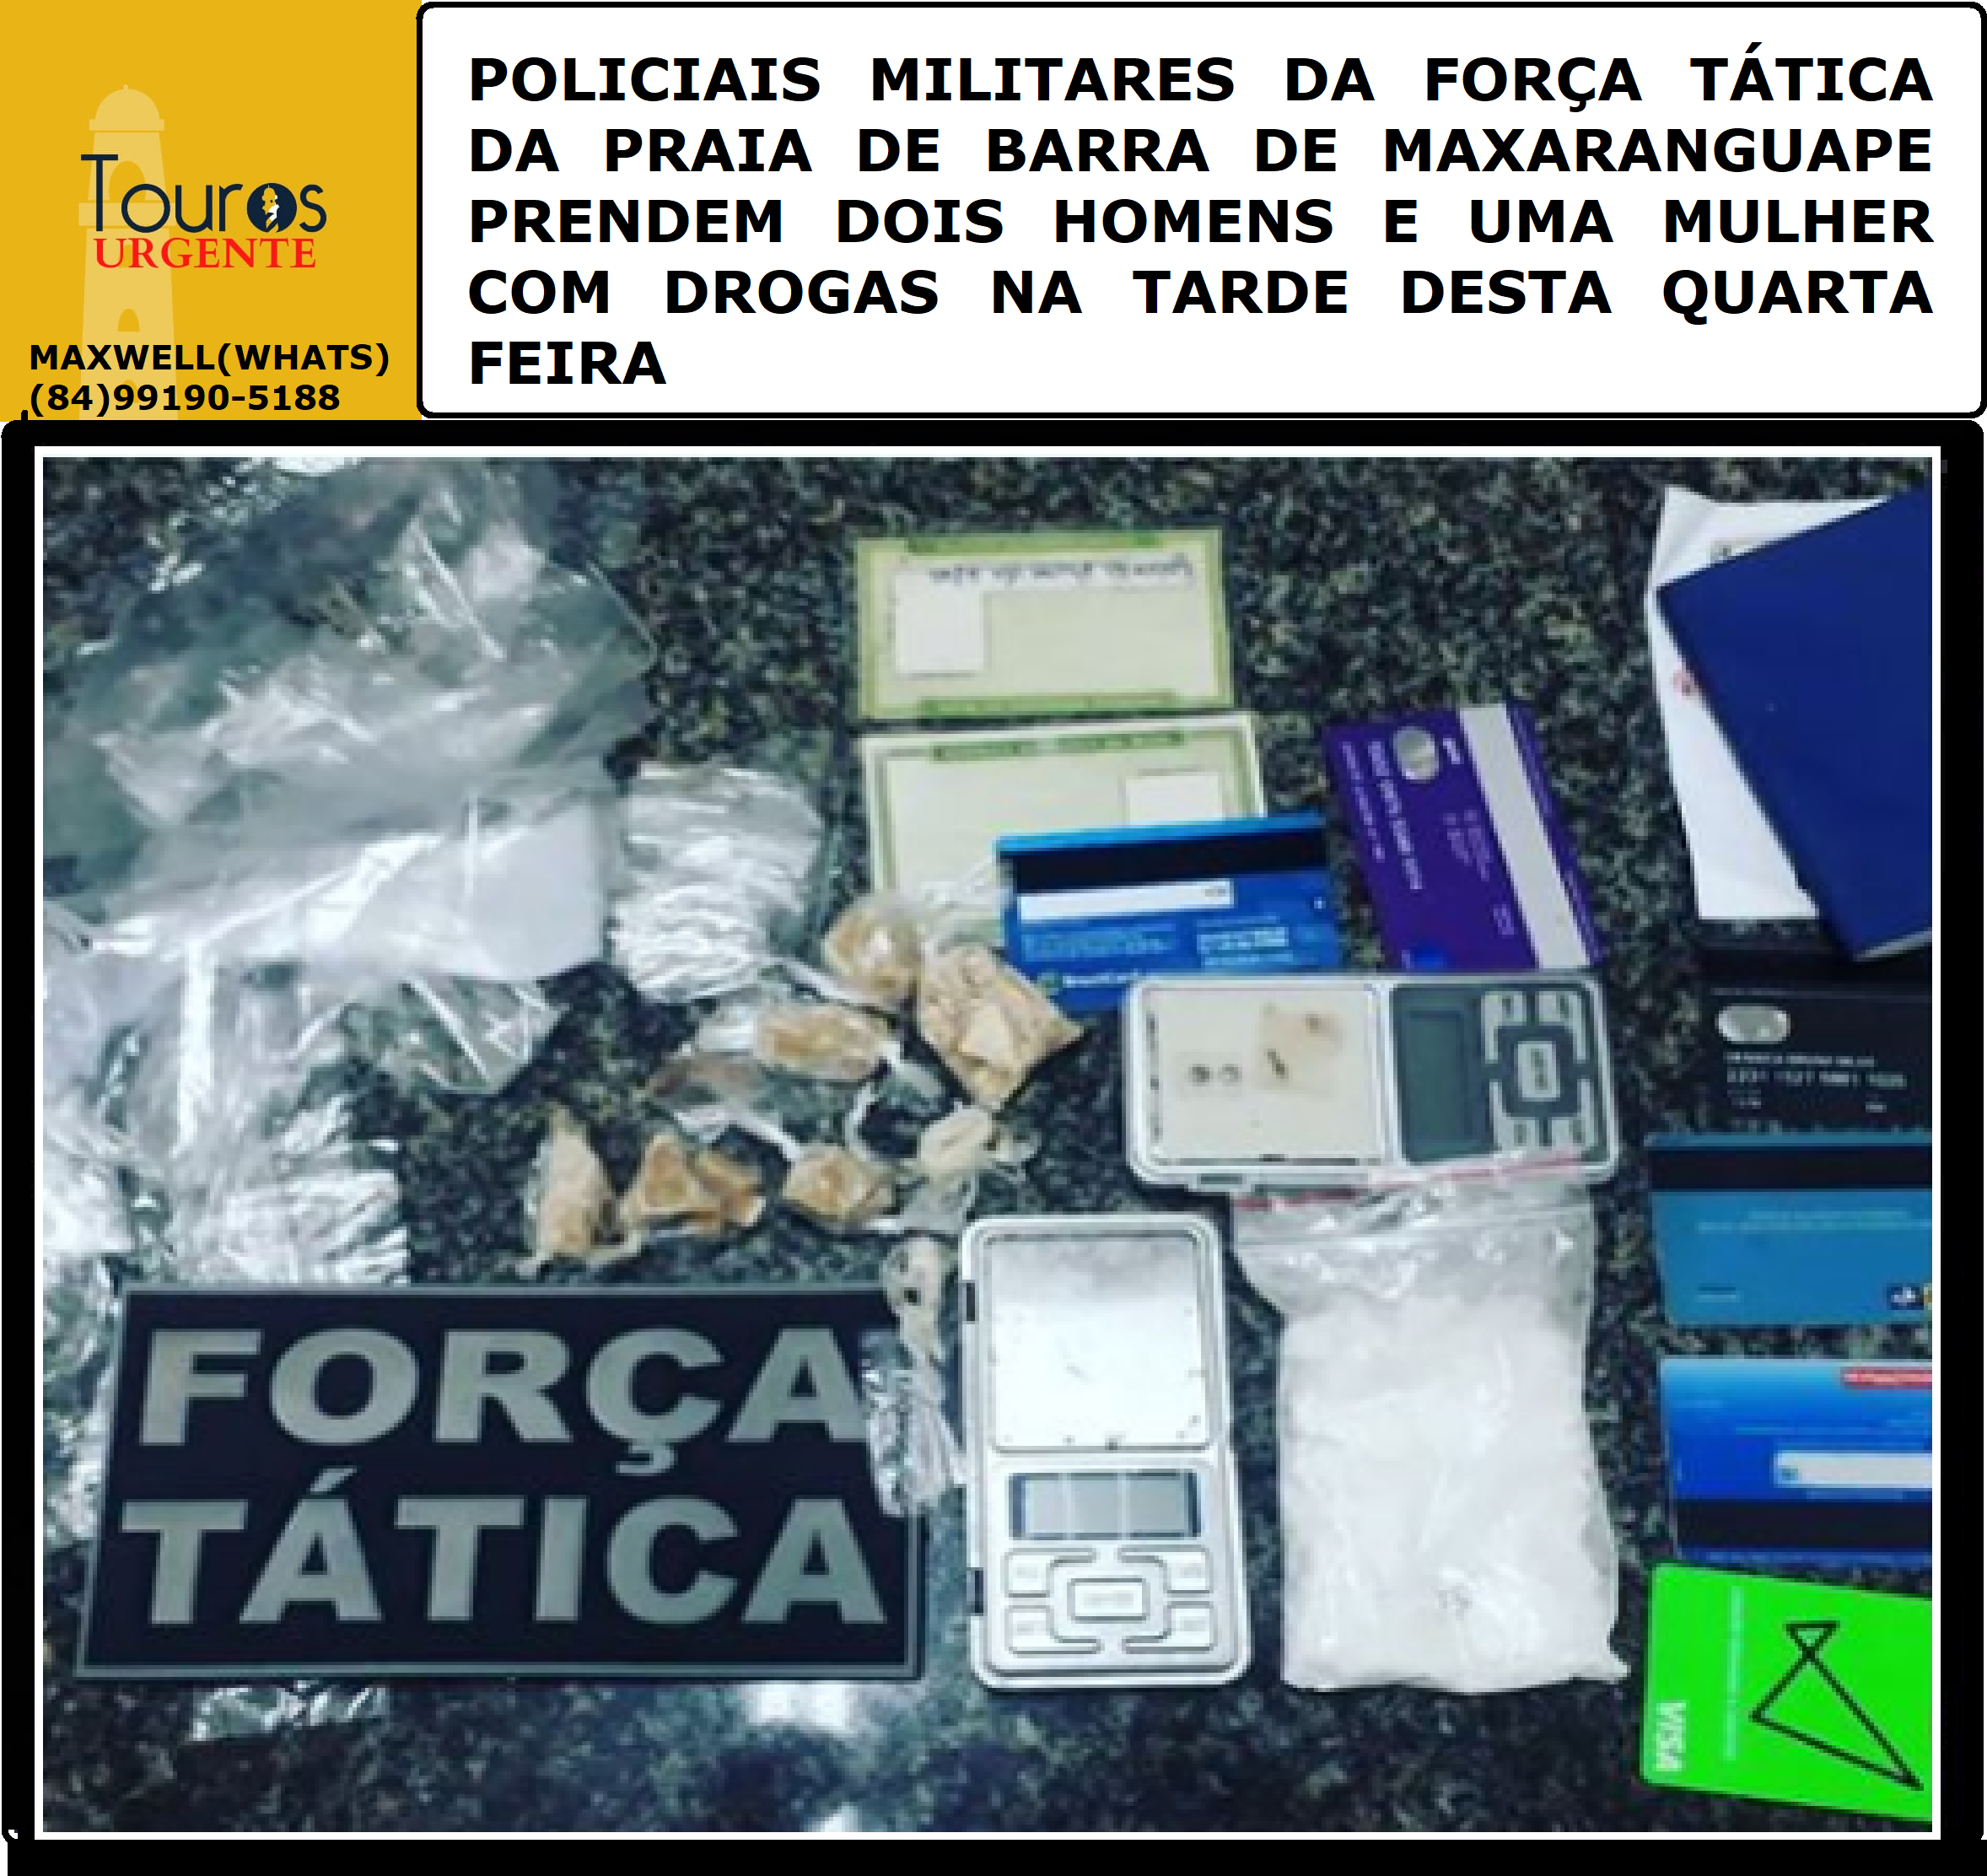 ​POLICIAIS MILITARES DA FORÇA TÁTICA DA PRAIA DE BARRA DE MAXARANGUAPE